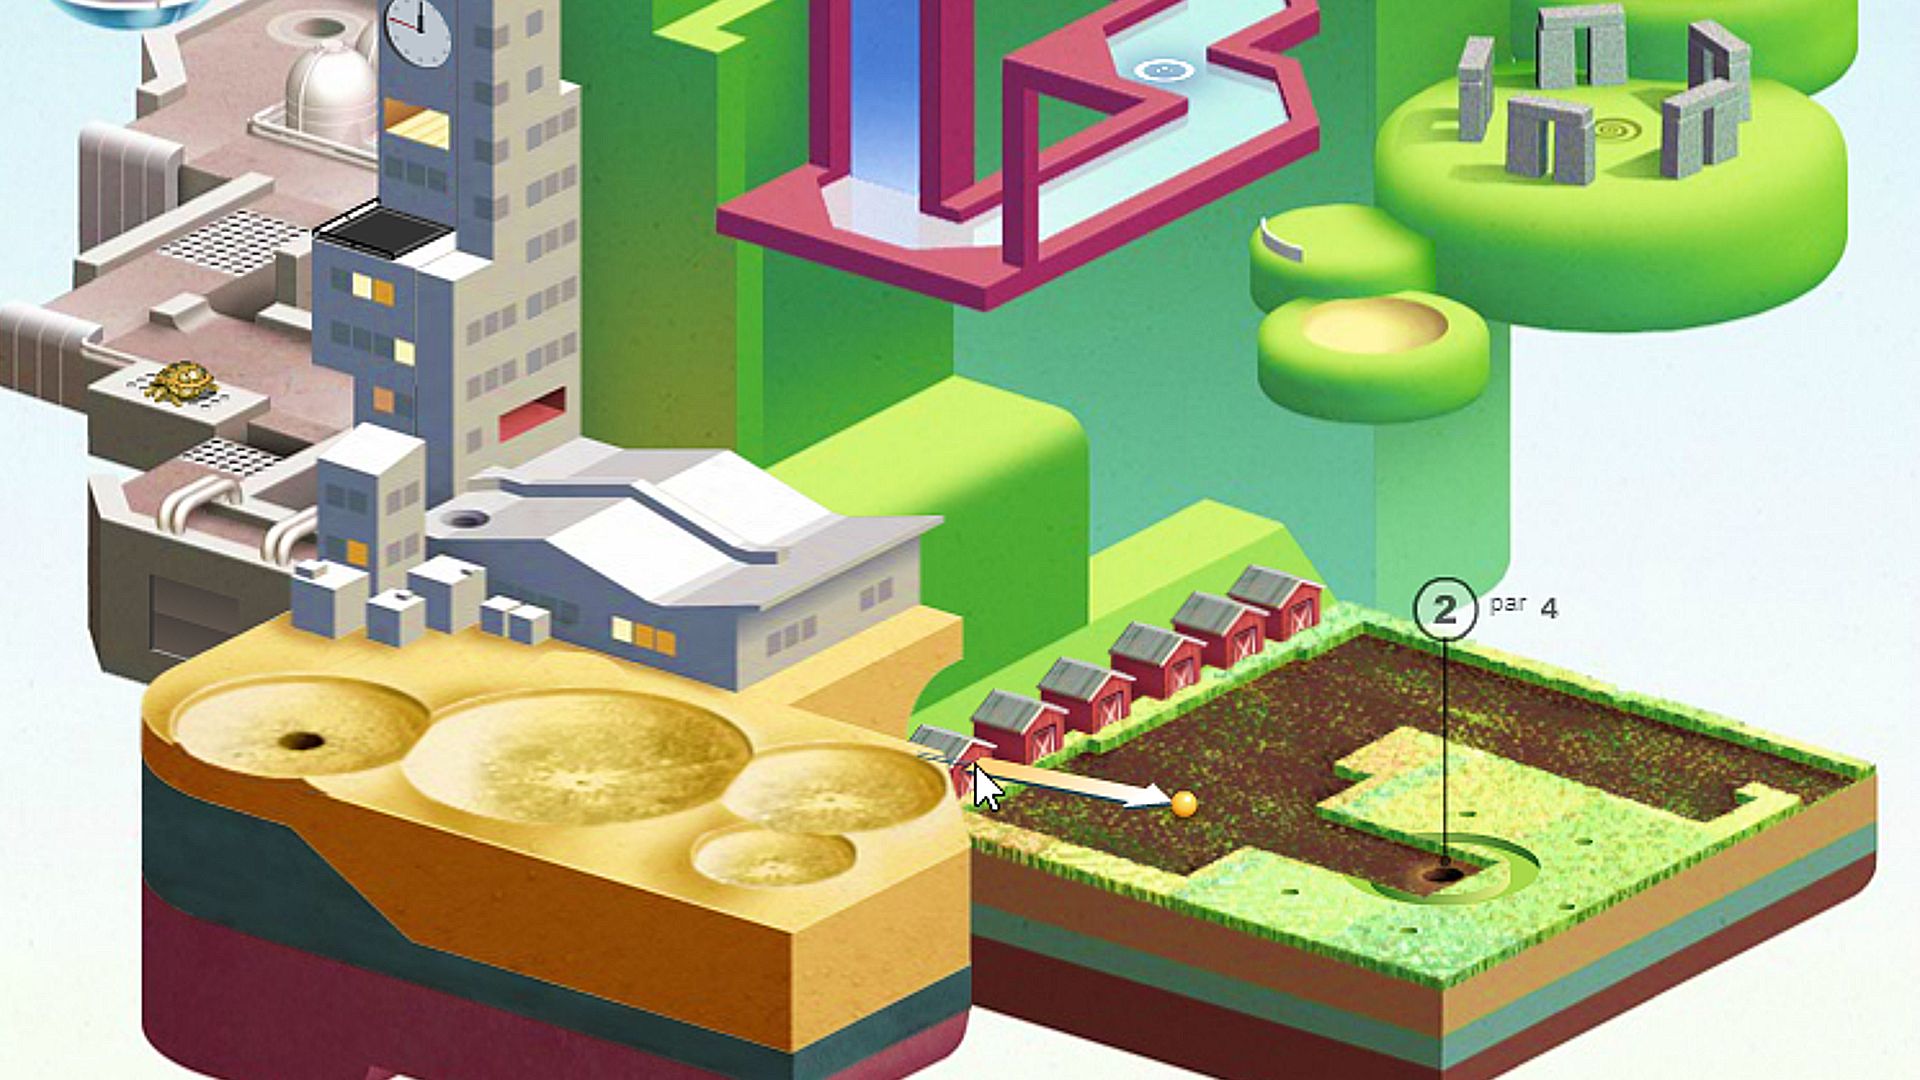 Online játékok: Wonderputt. A kép egy város-esque golfpályát mutat